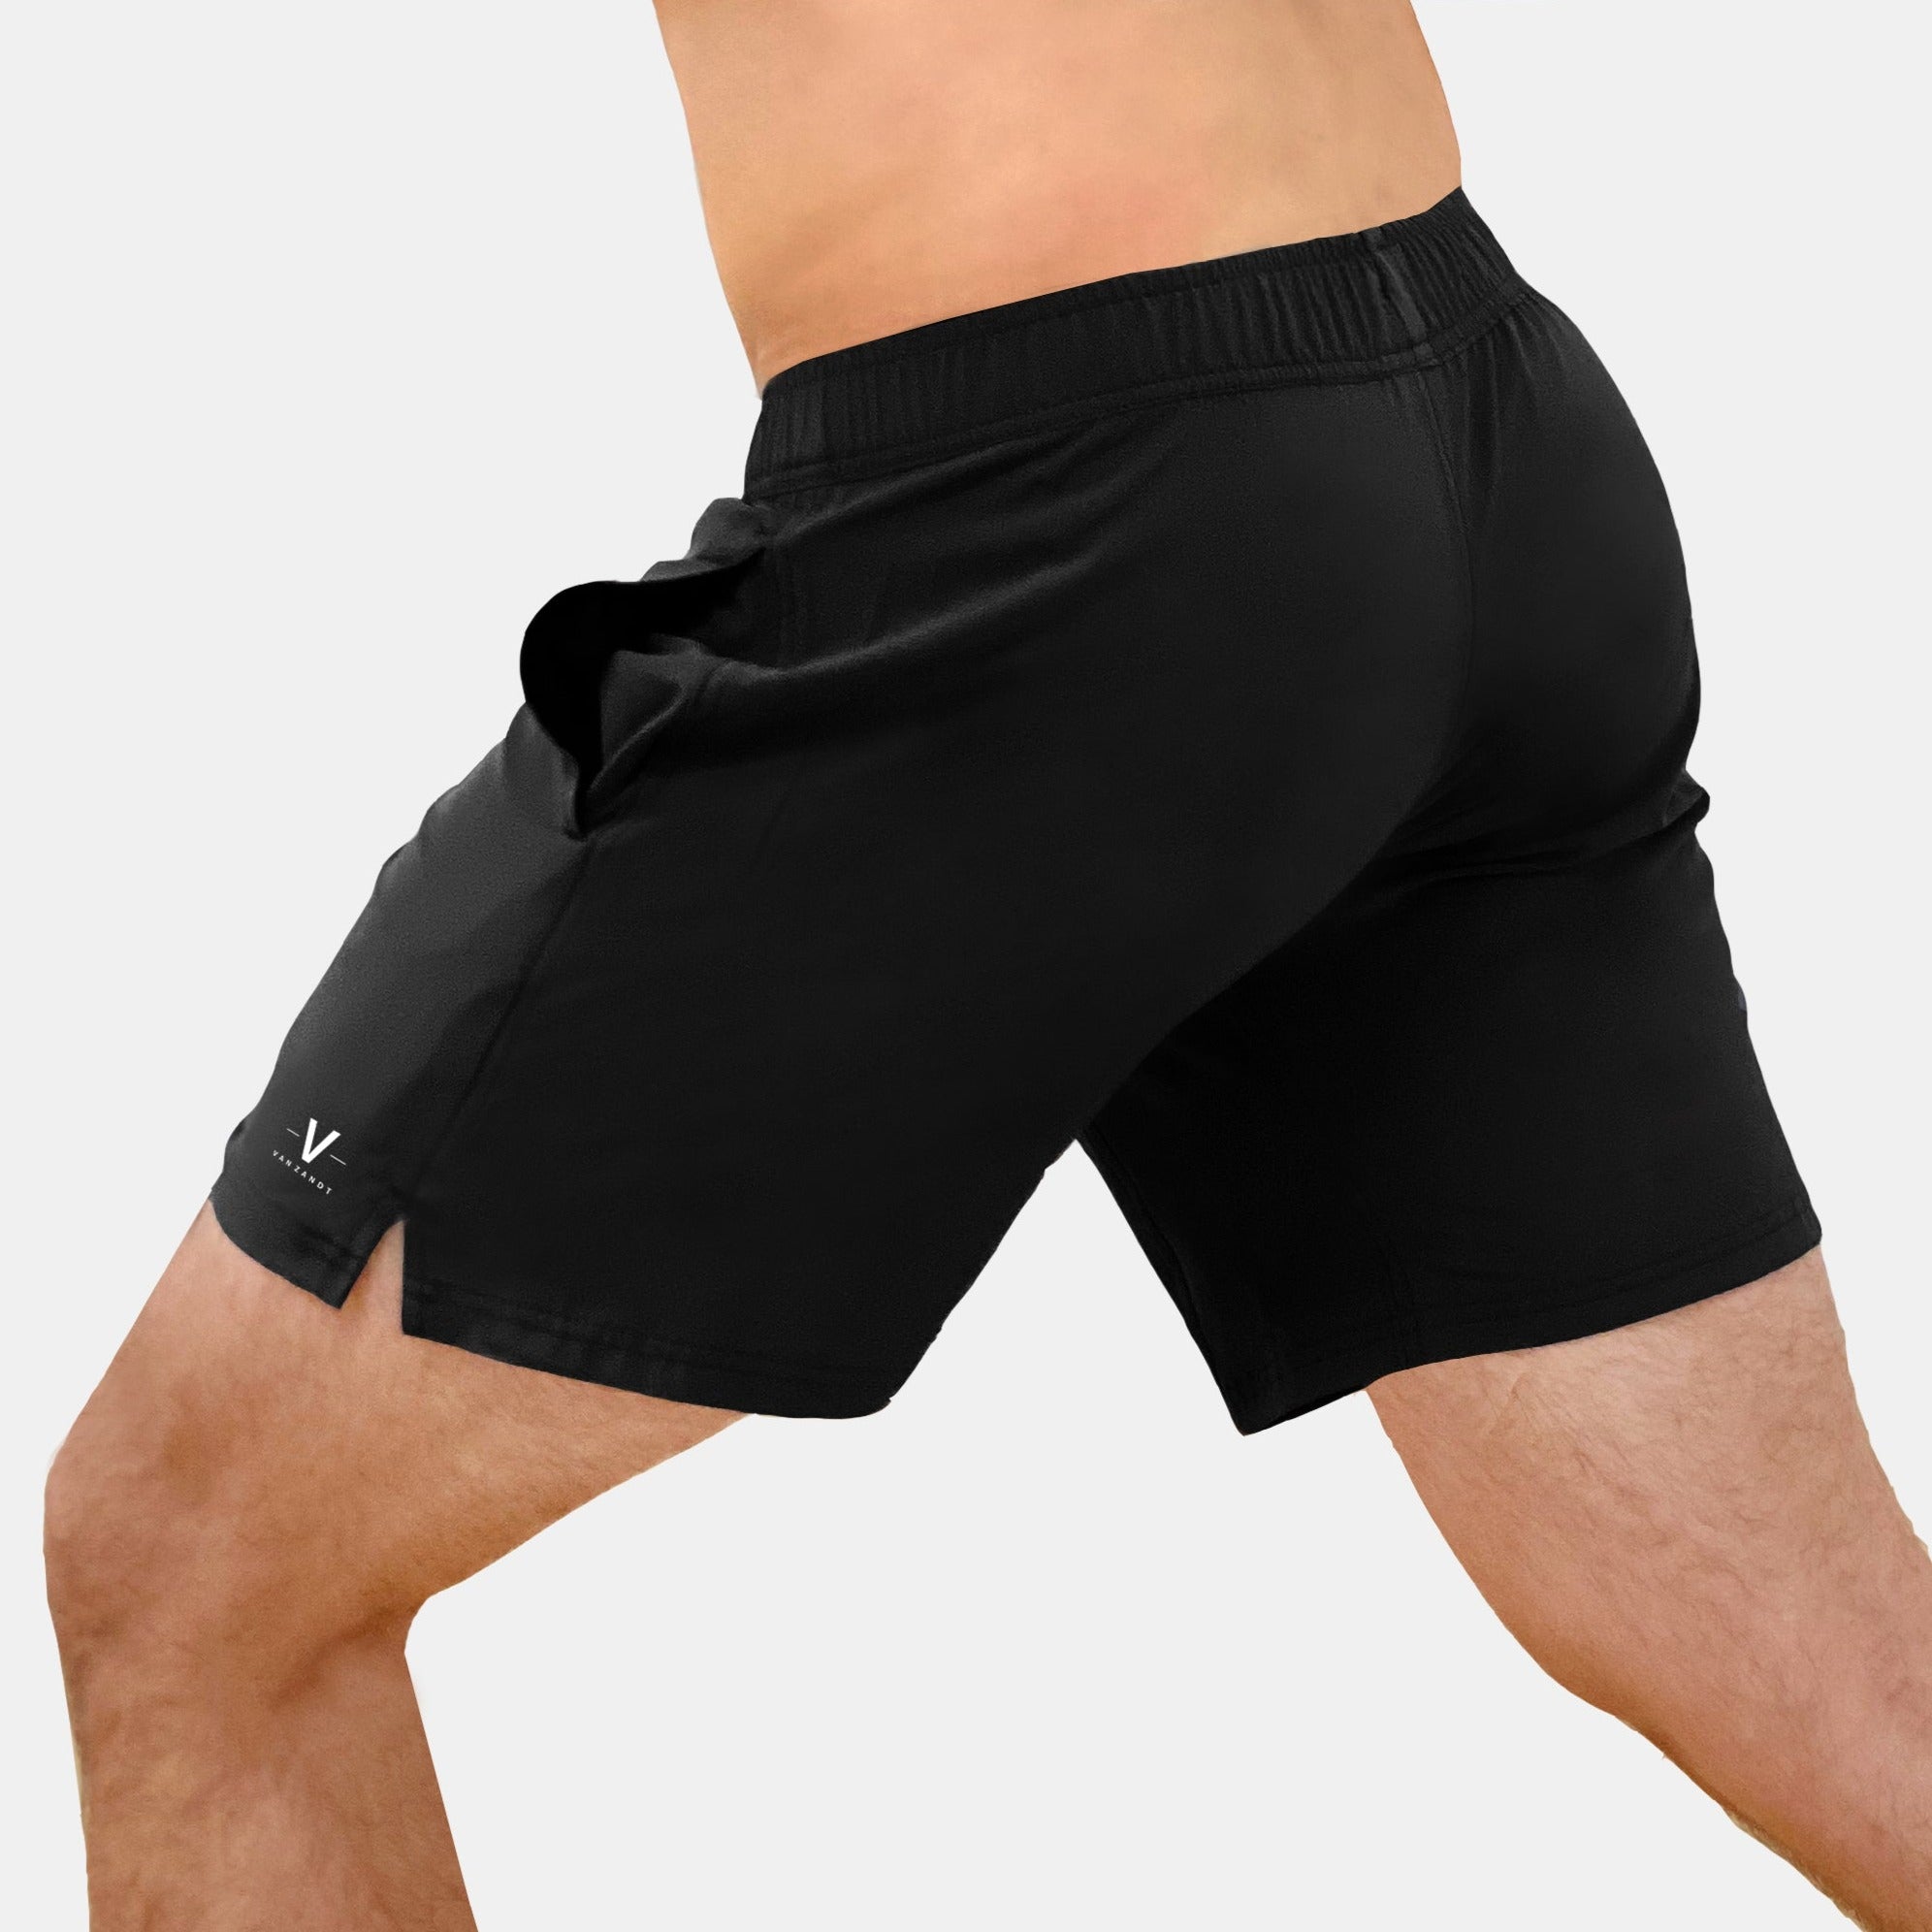 Ultra-Light Active Shorts Black - VAN ZANDT APPAREL